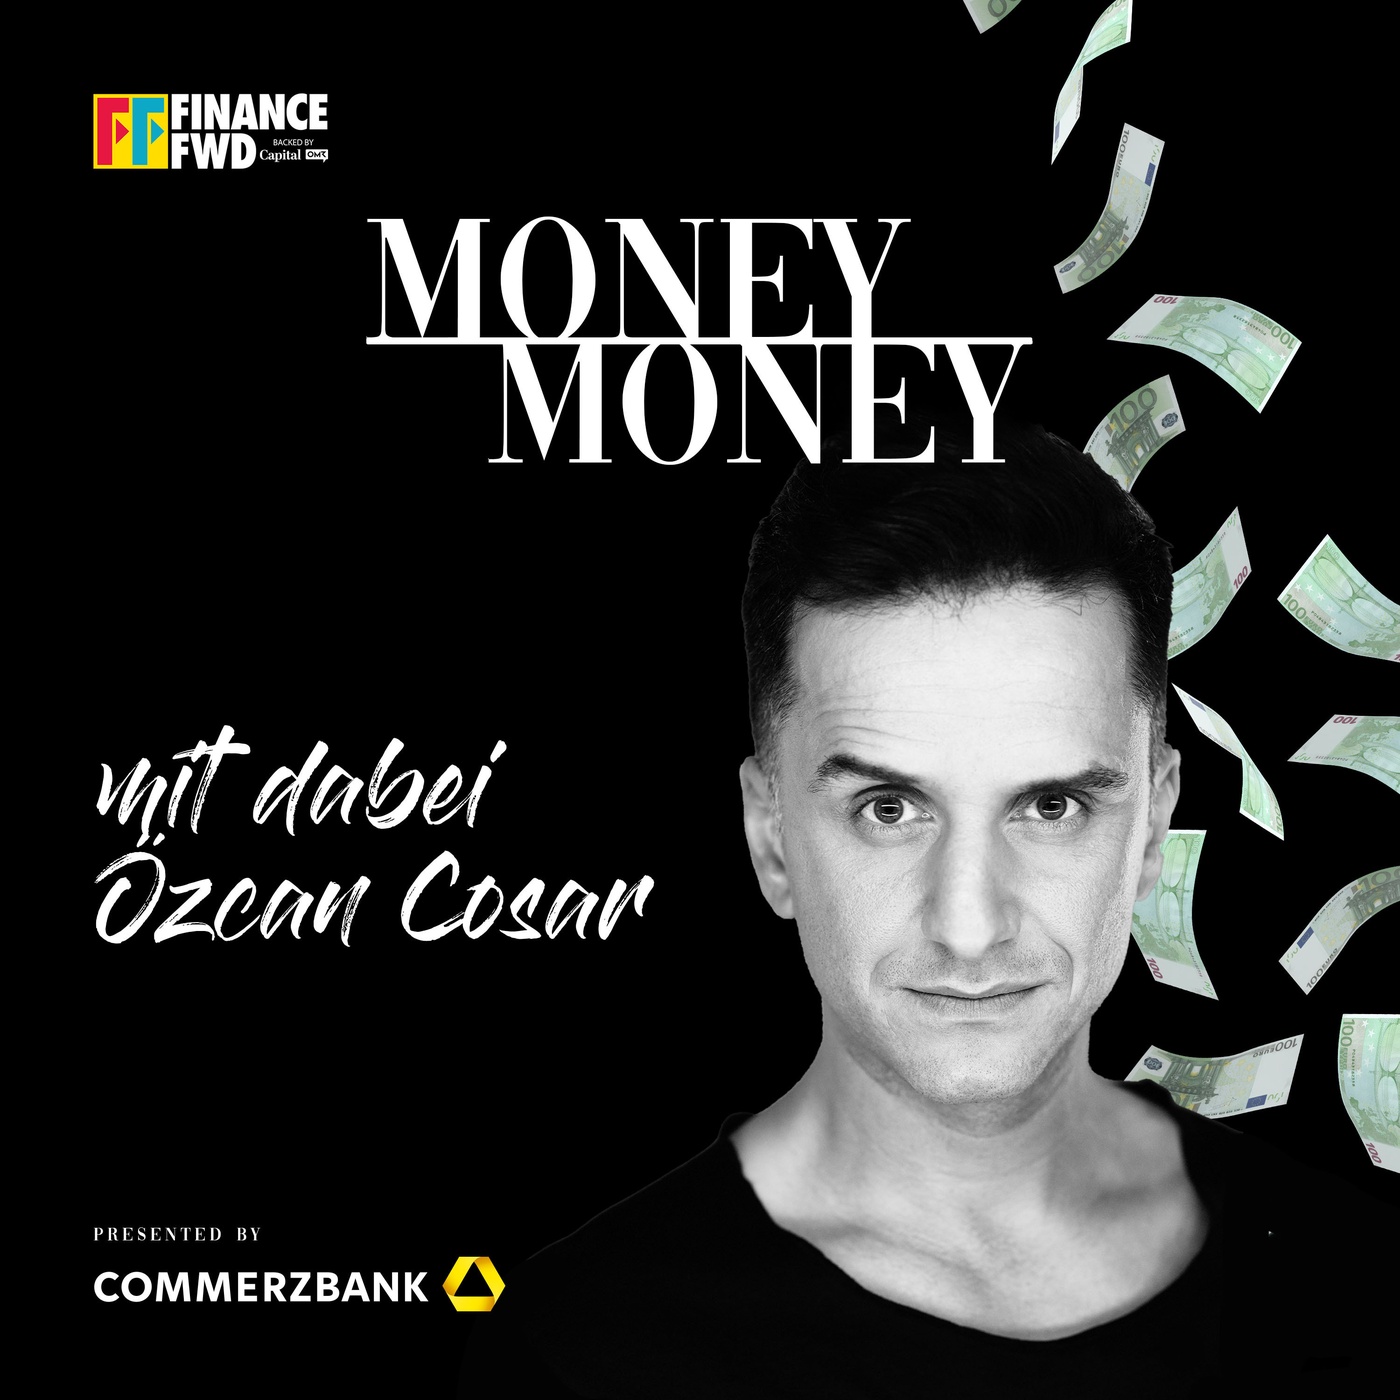 #25 Özcan Cosar – Vom Breakdance-Weltmeister zum Comedian mit Faible für Edelmetalle